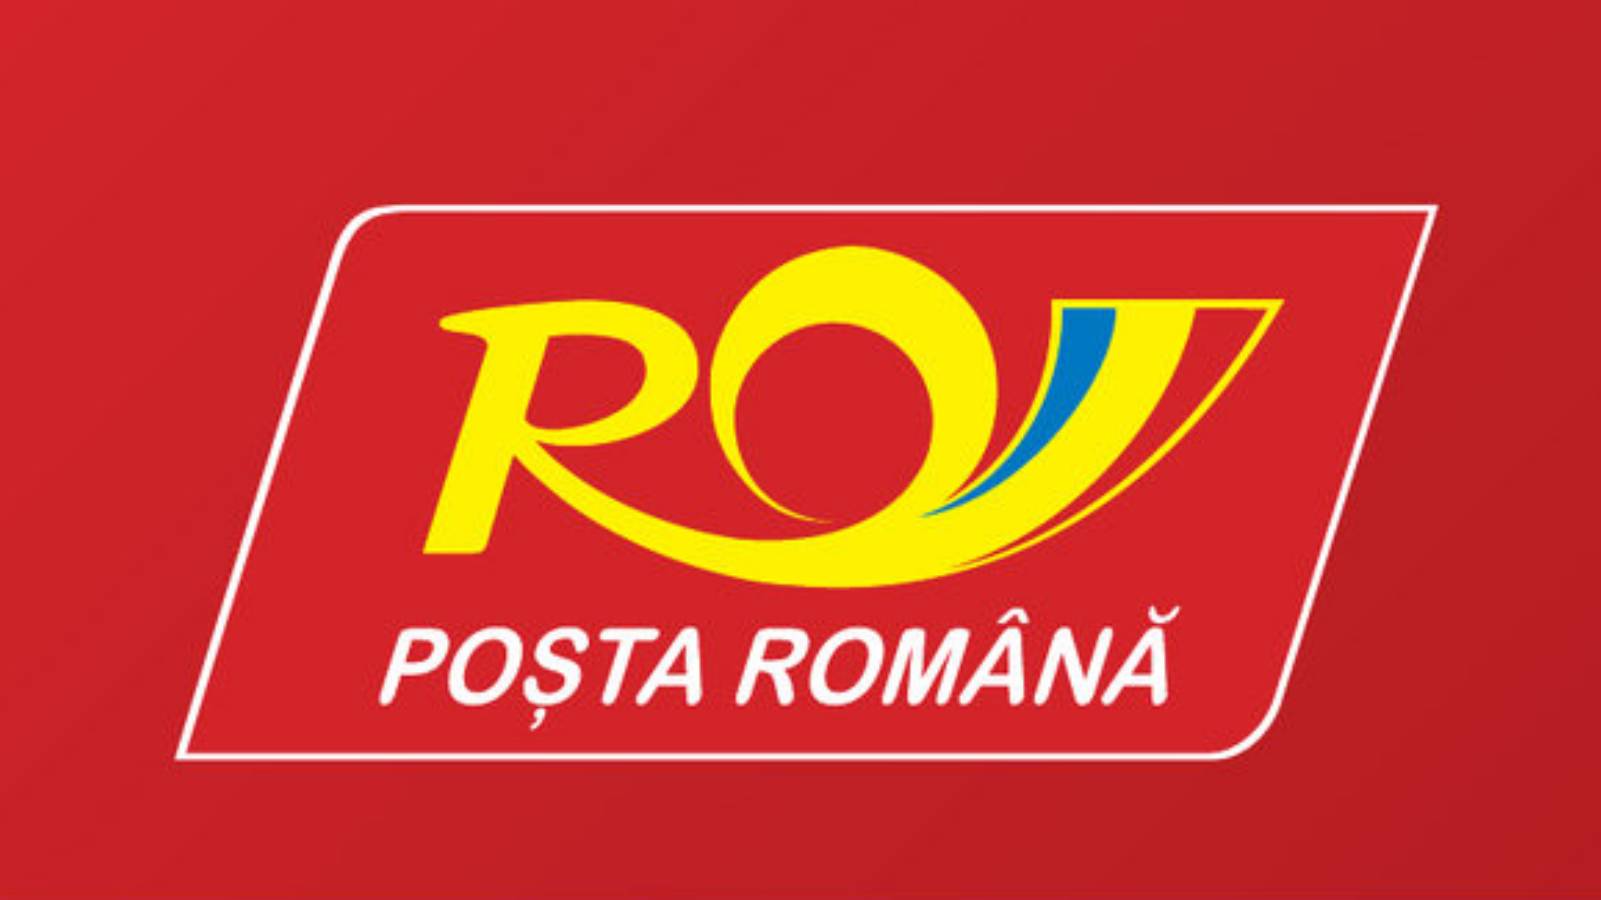 Lokalizacja poczty rumuńskiej